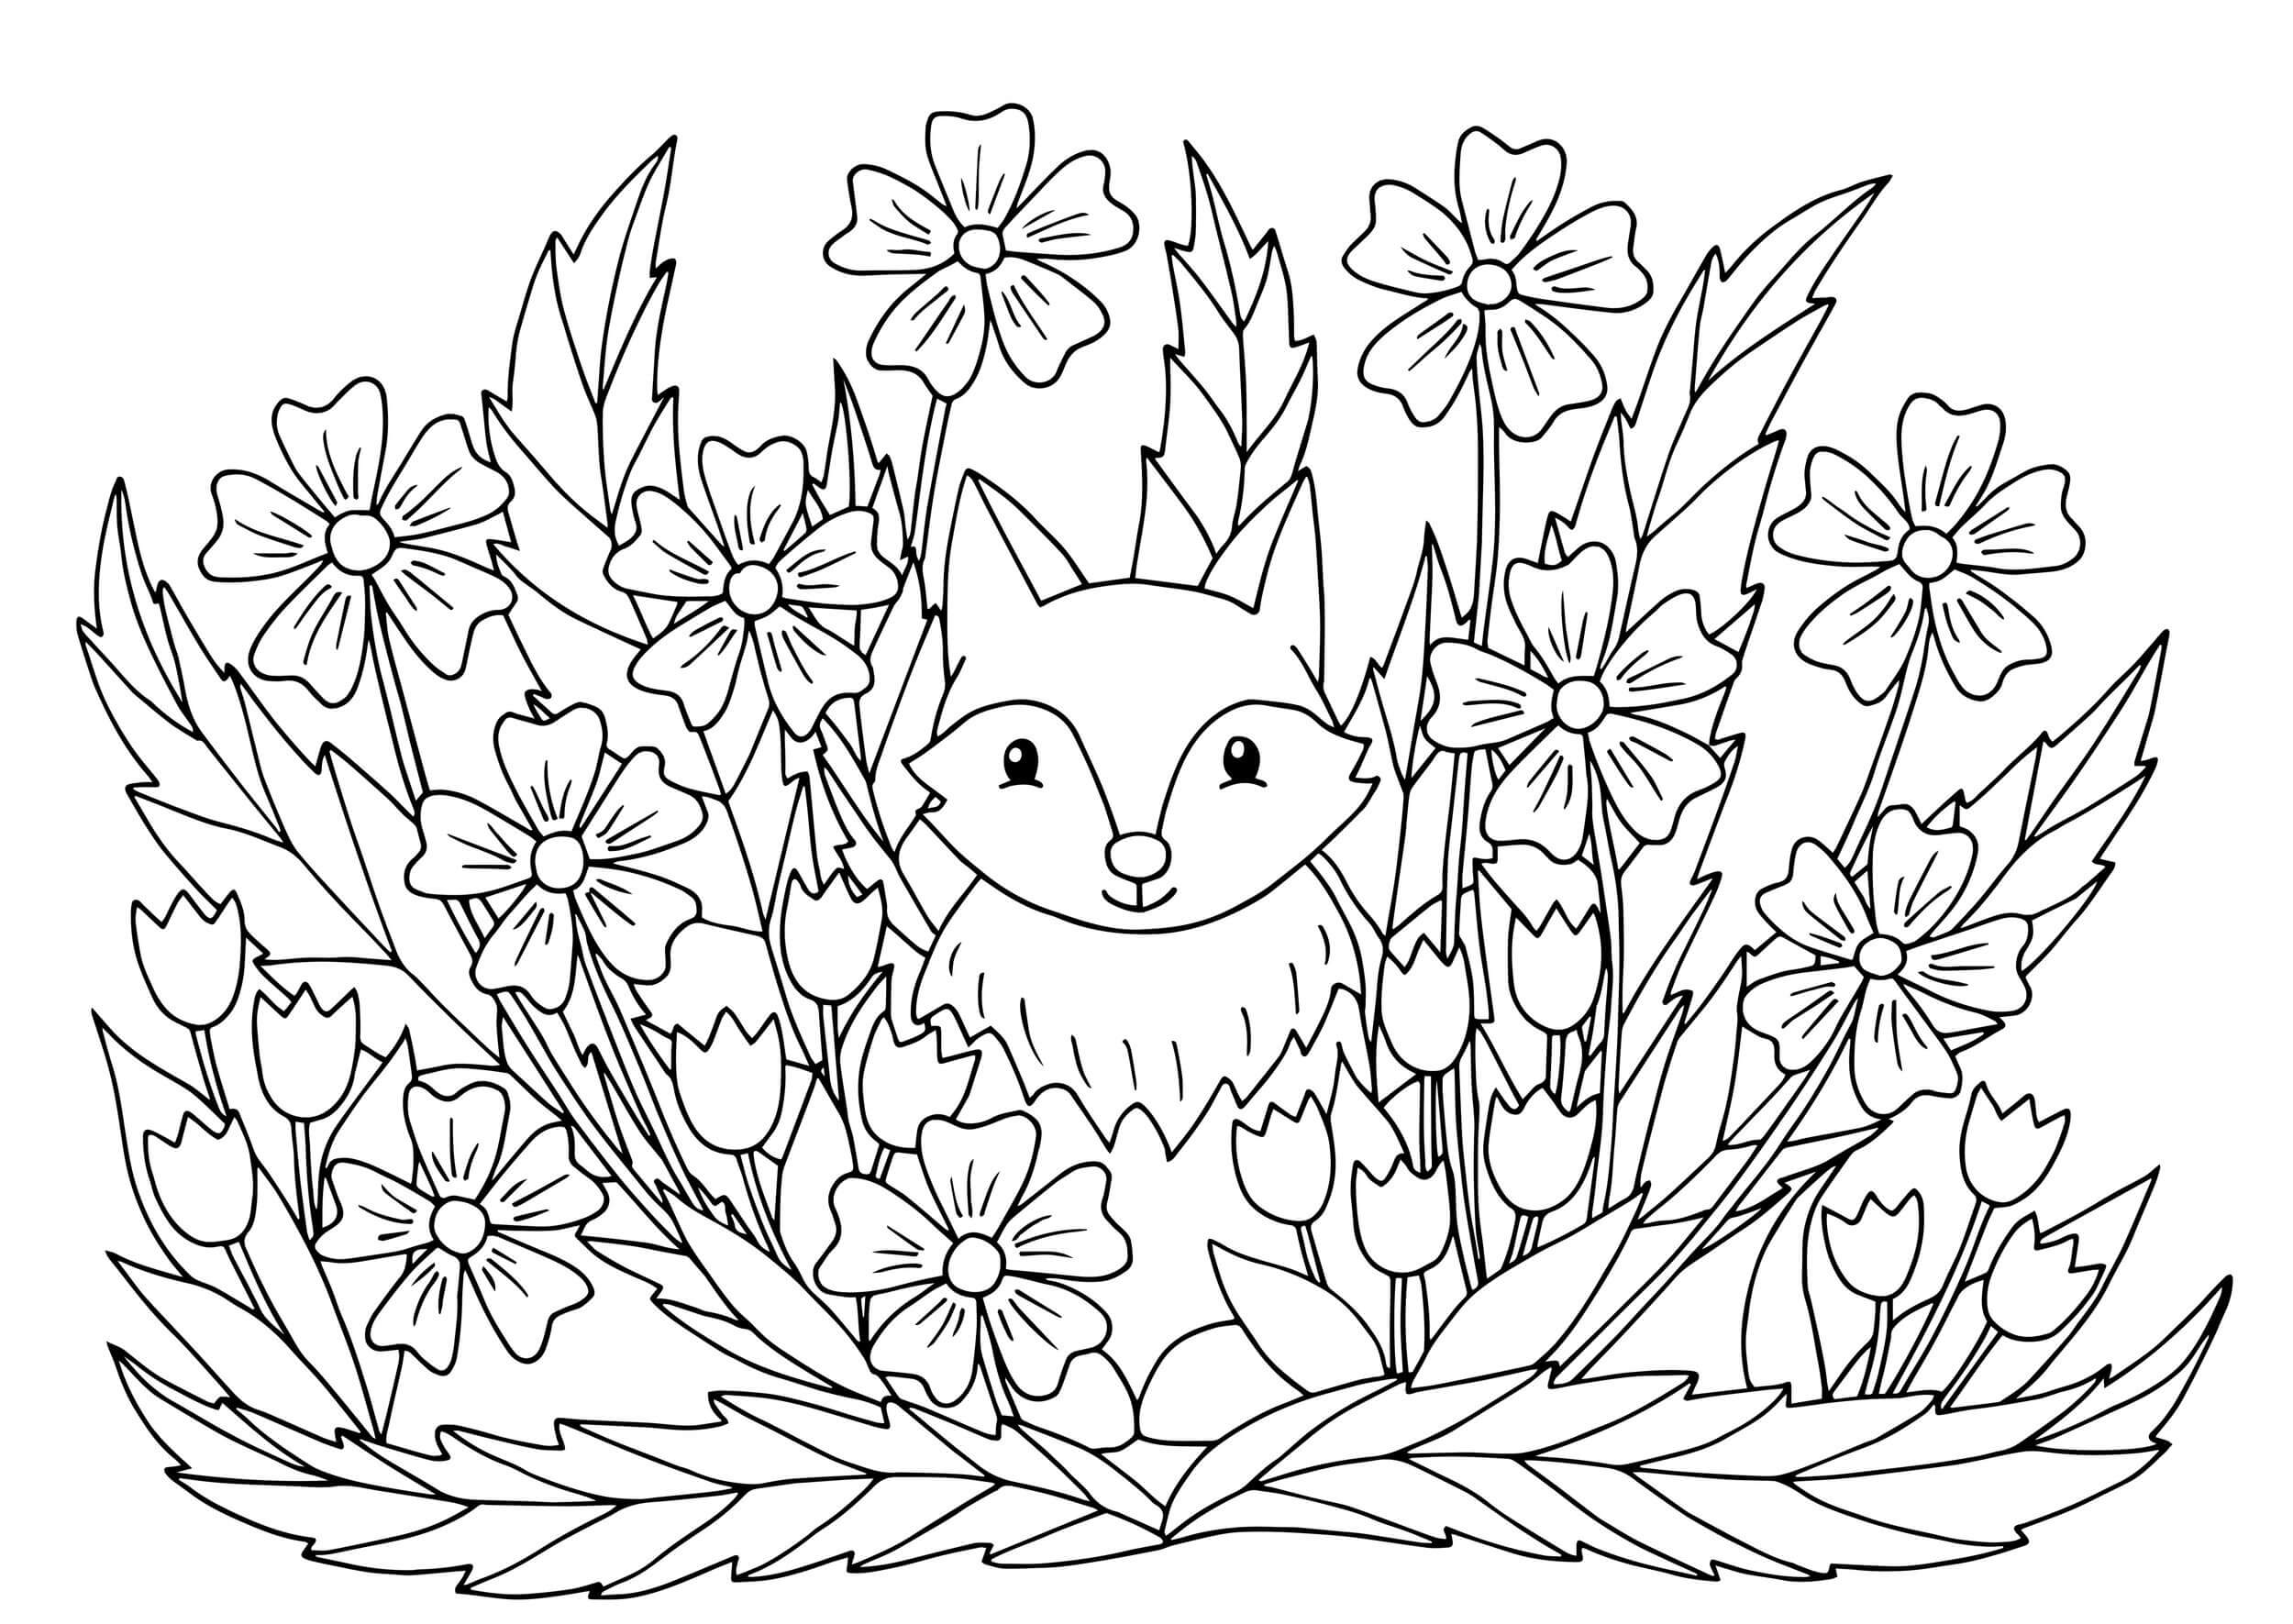 Fuchs im Blumenbusch